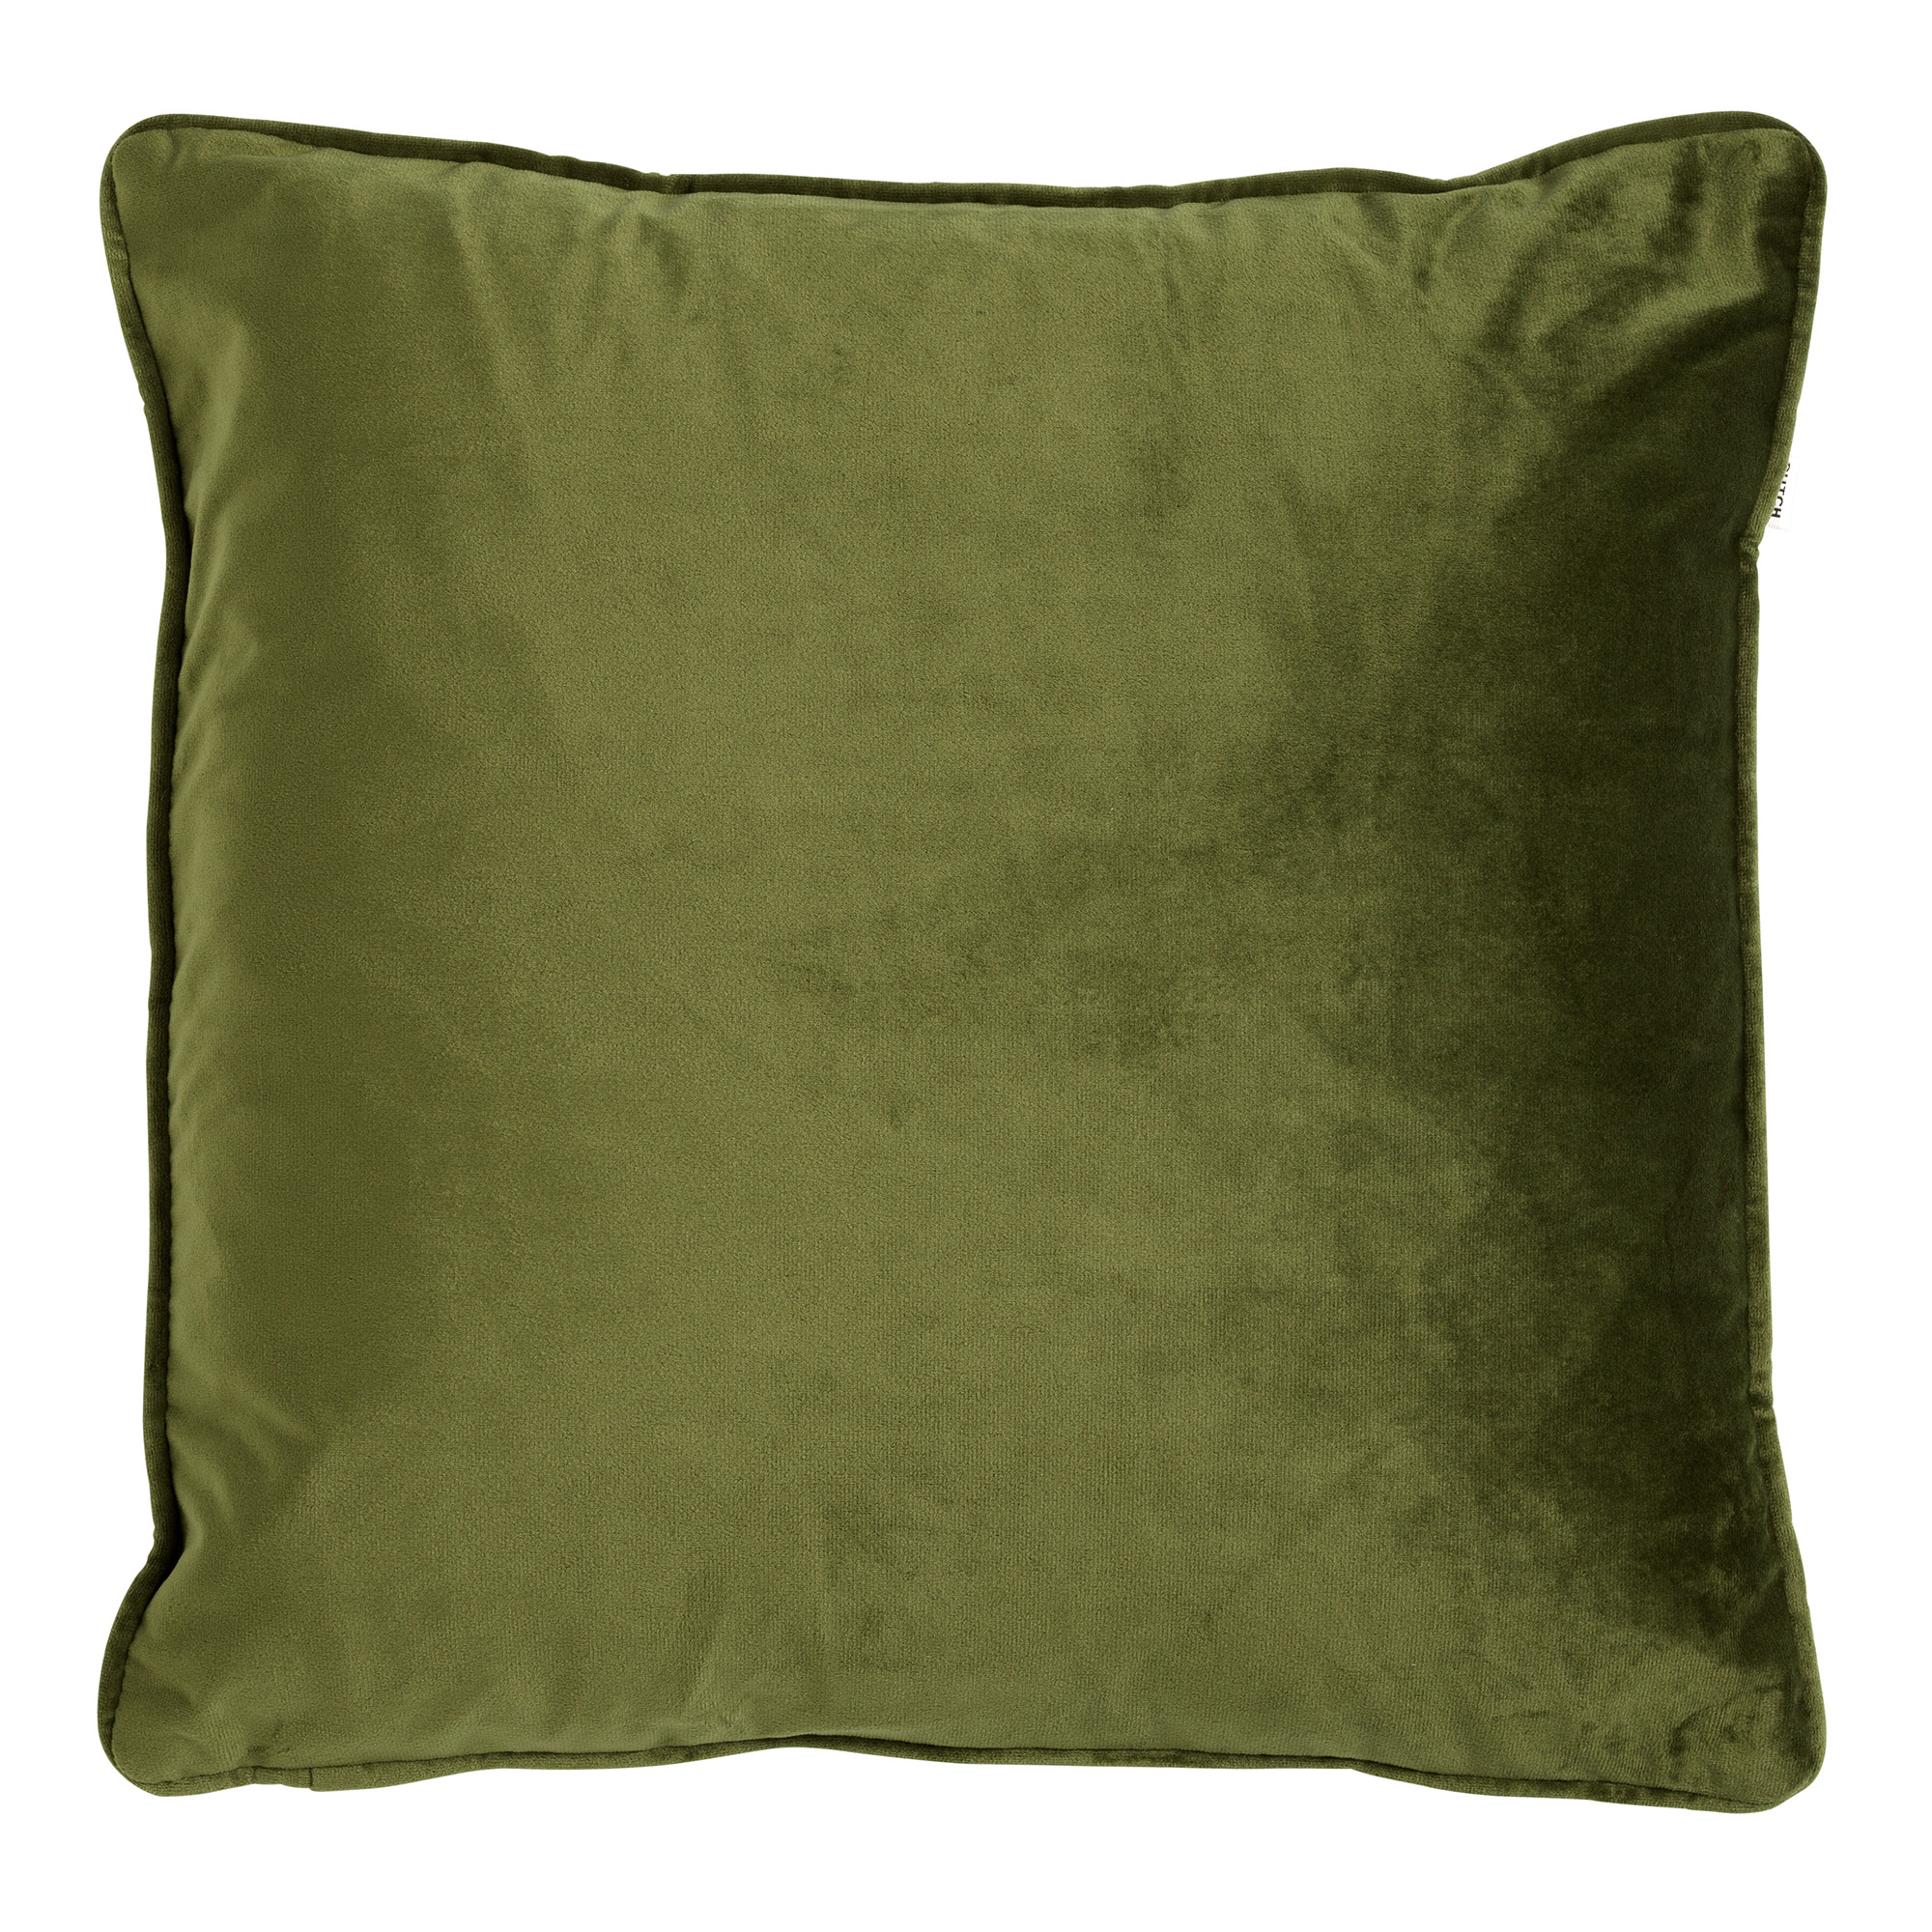 FINN - Kussenhoes velvet 60x60 cm - Chive - groen